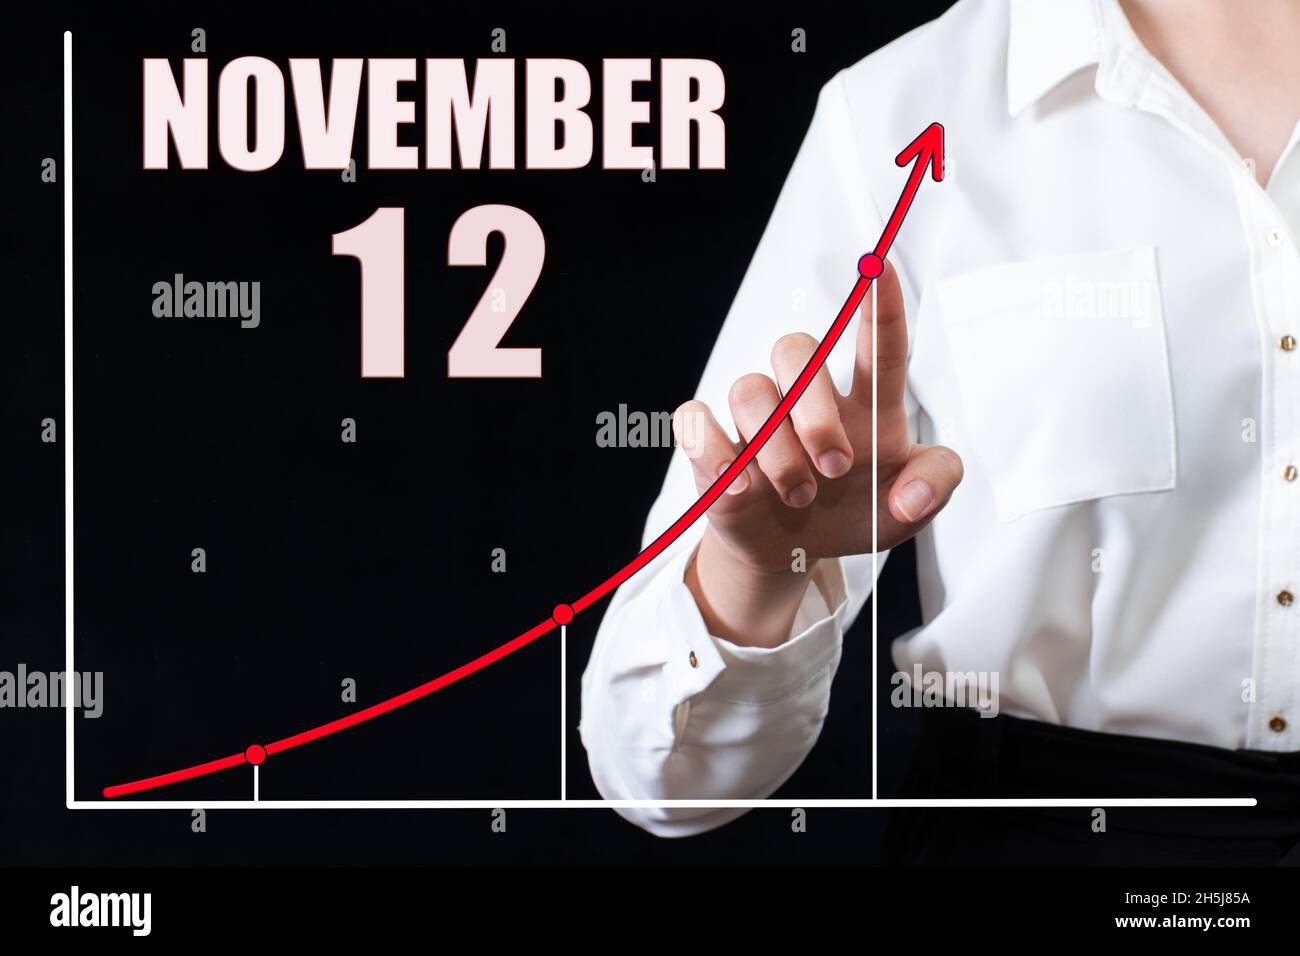 12e jour de novembre.Main de femme d'affaires pointant vers le graphique et un calendrier avec la date du 12 novembre.Objectifs commerciaux pour la journée.Mont d'automne Banque D'Images